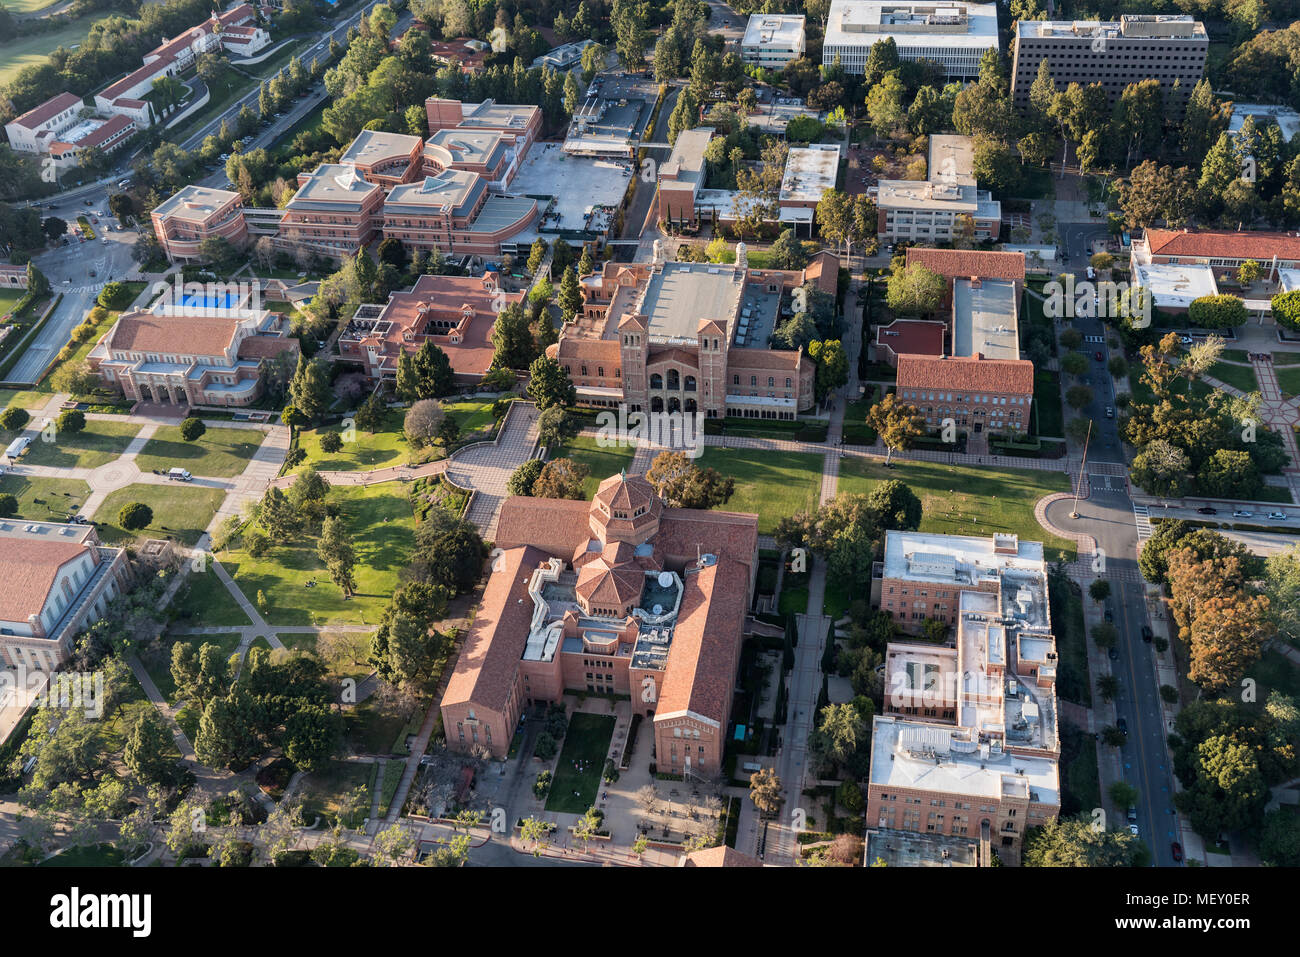 Los Angeles, Kalifornien, USA - 18. April 2018: Nachmittag Luftaufnahme der historischen Architektur auf dem UCLA Campus in Westwood. Stockfoto